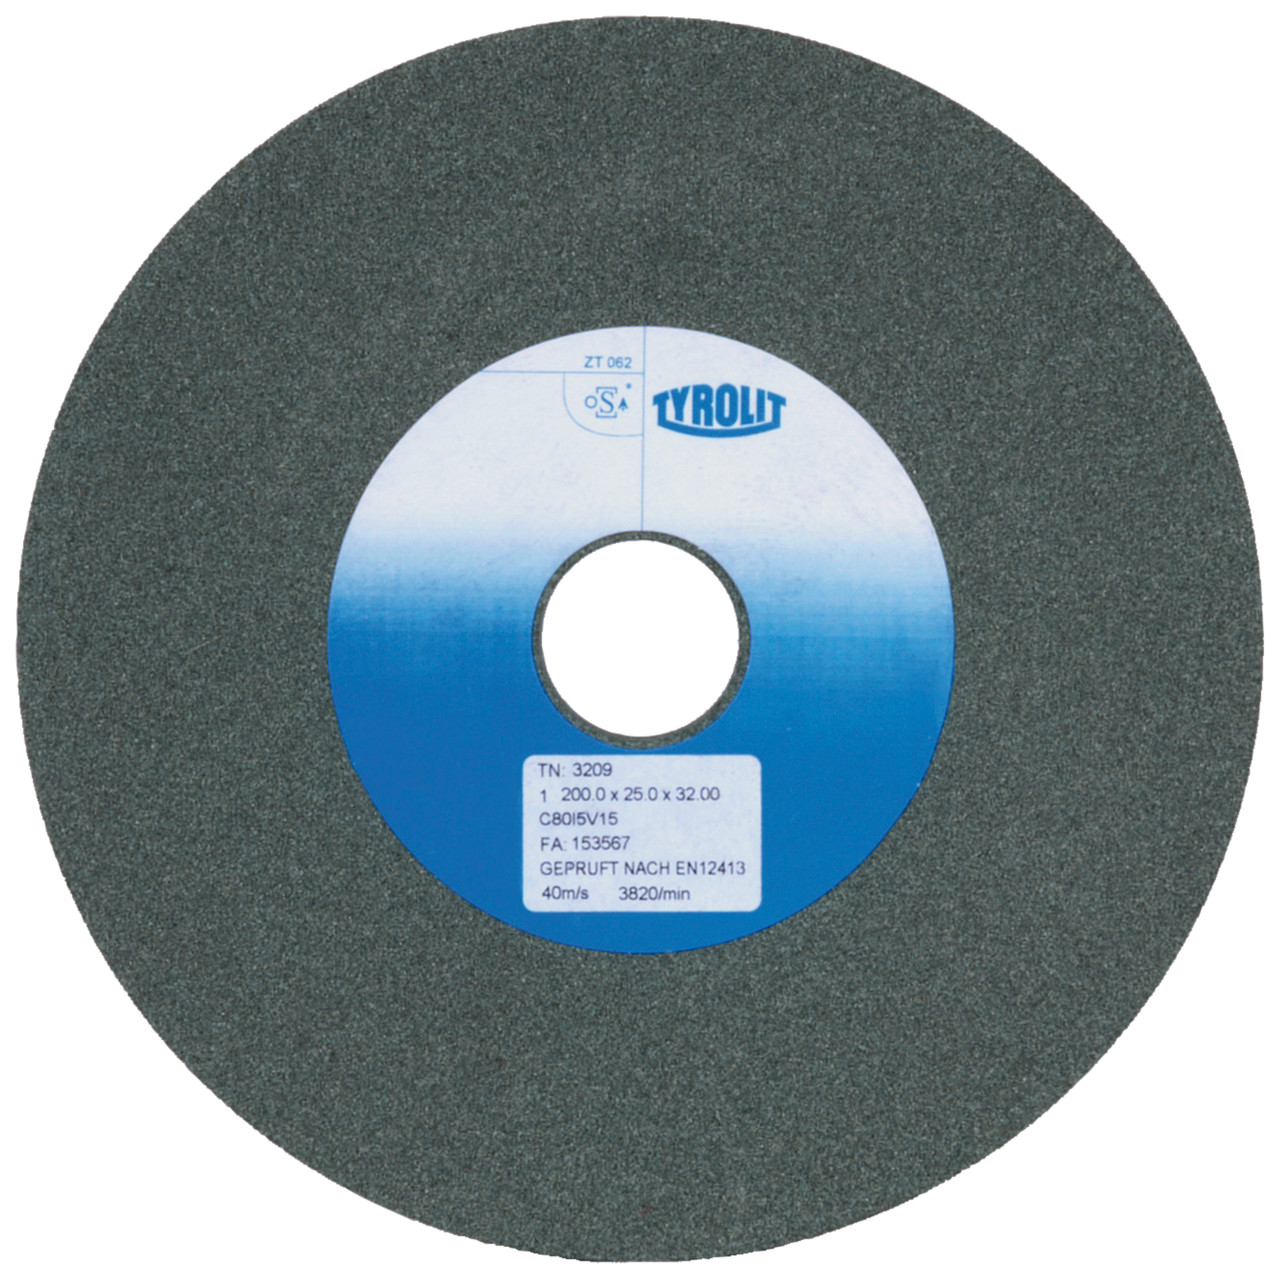 TYROLIT discos abrasivos cerámicos convencionales DxDxH 200x20x32 Para metal duro y fundición, forma: 1, Art. 596597